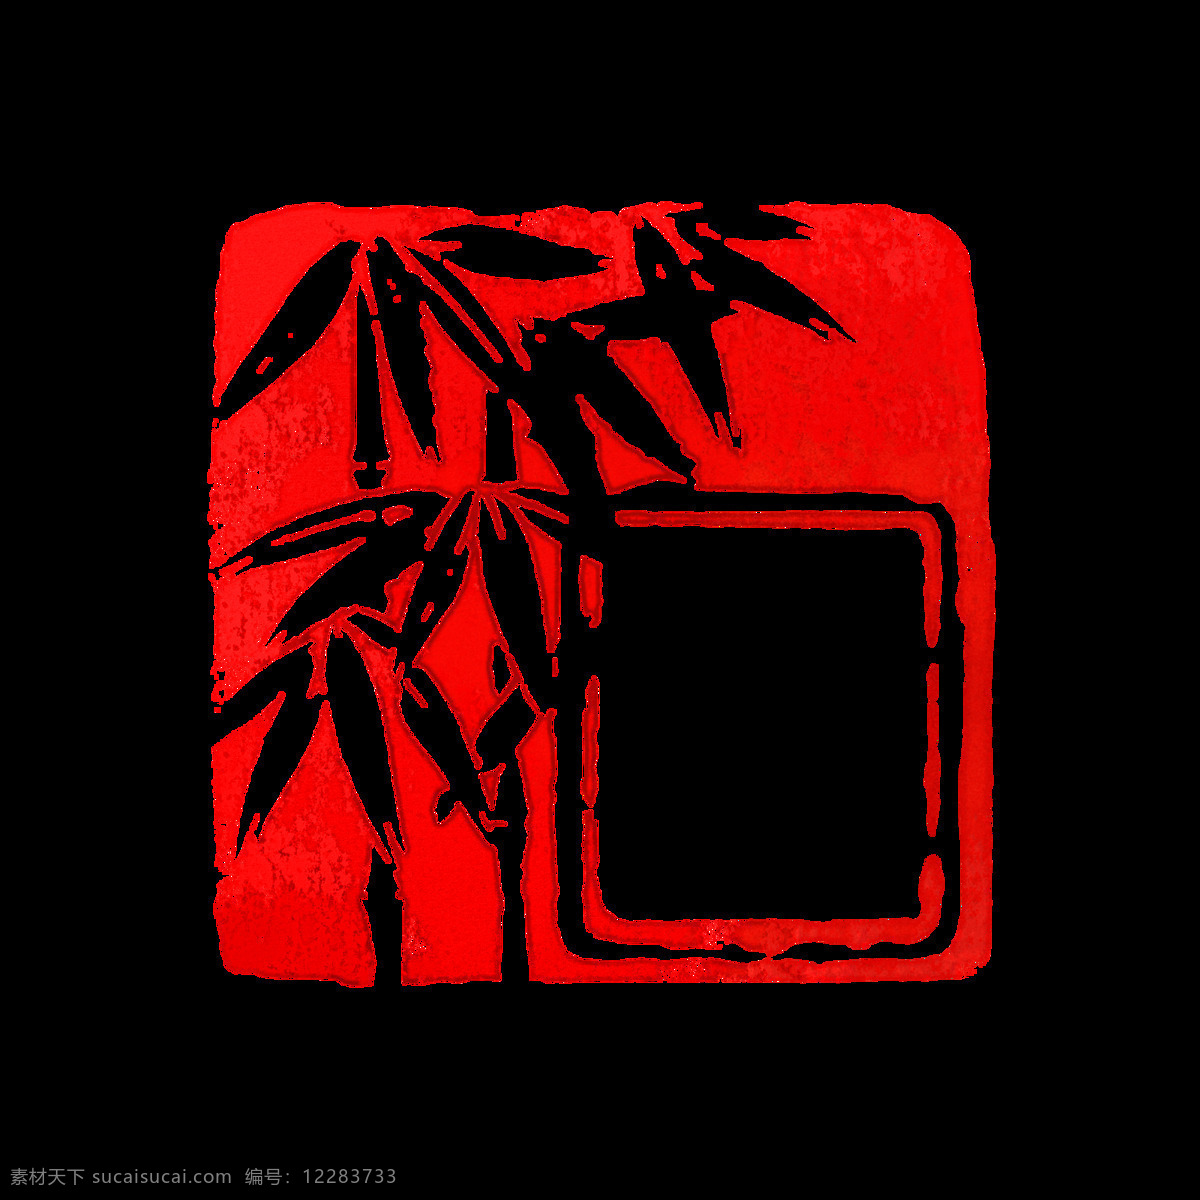 竹子印章 竹子 印章 中国红 复古 文艺 底纹边框 其他素材